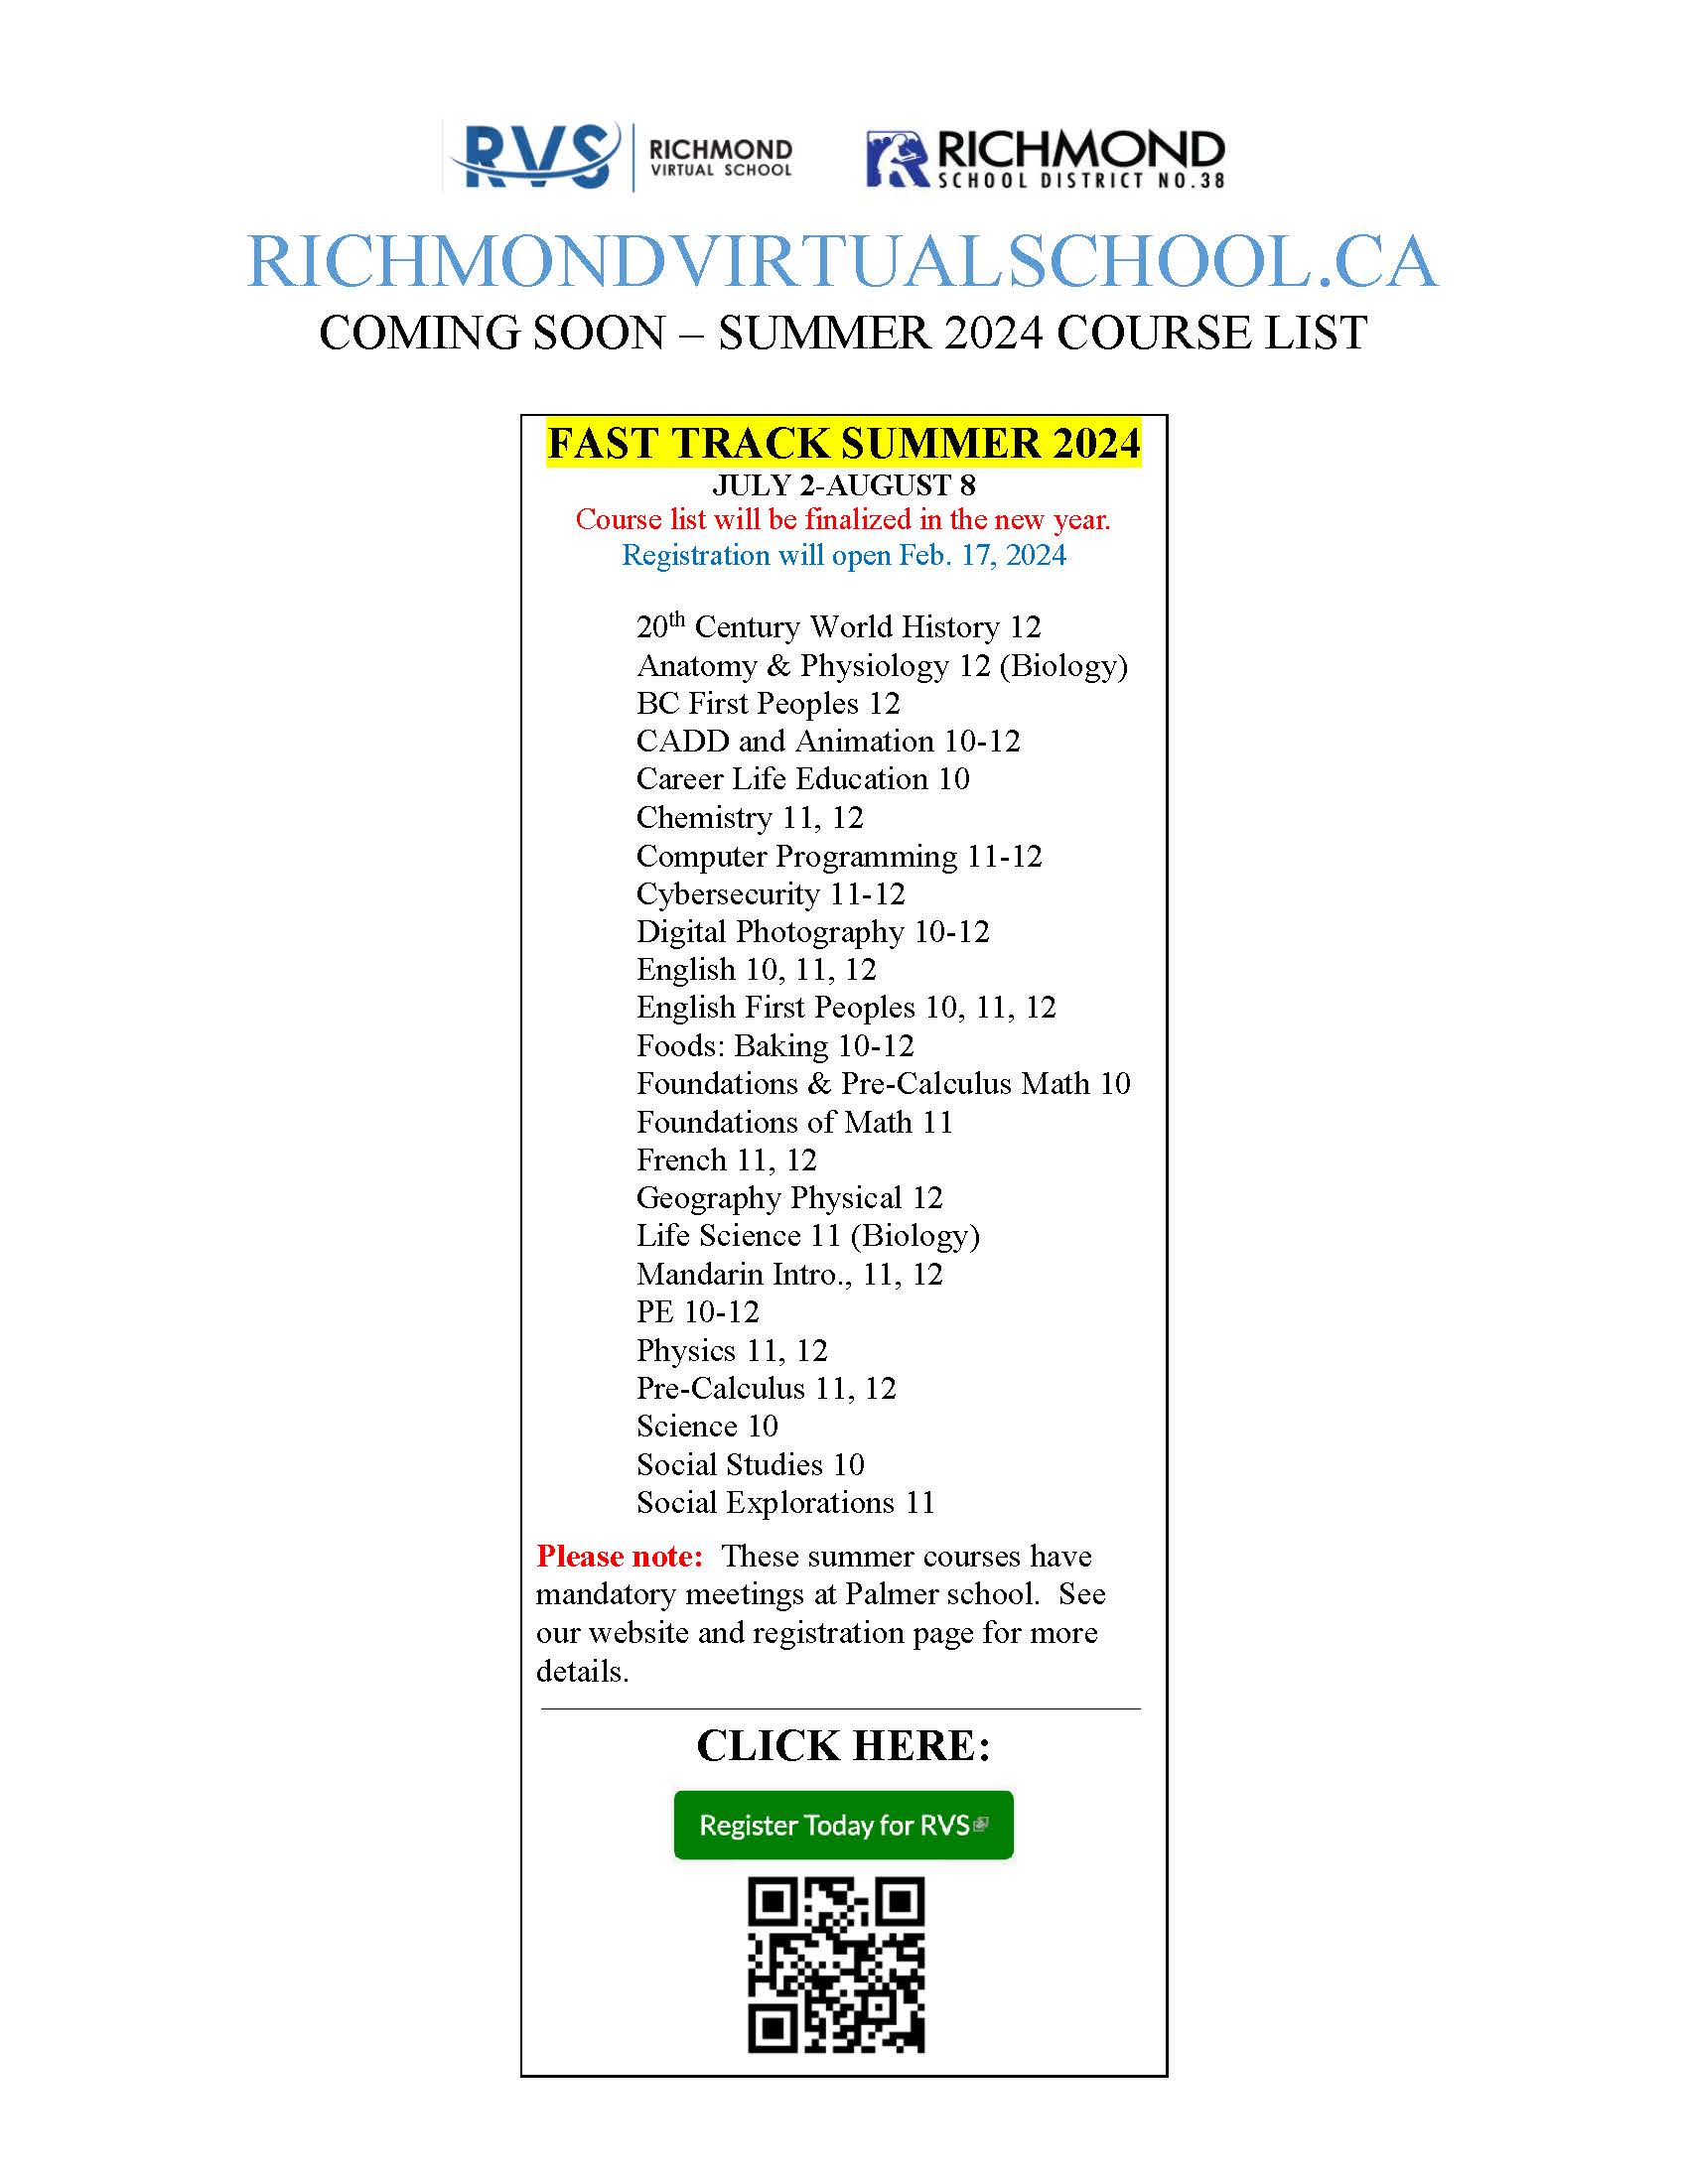 Summer 2024 Course List